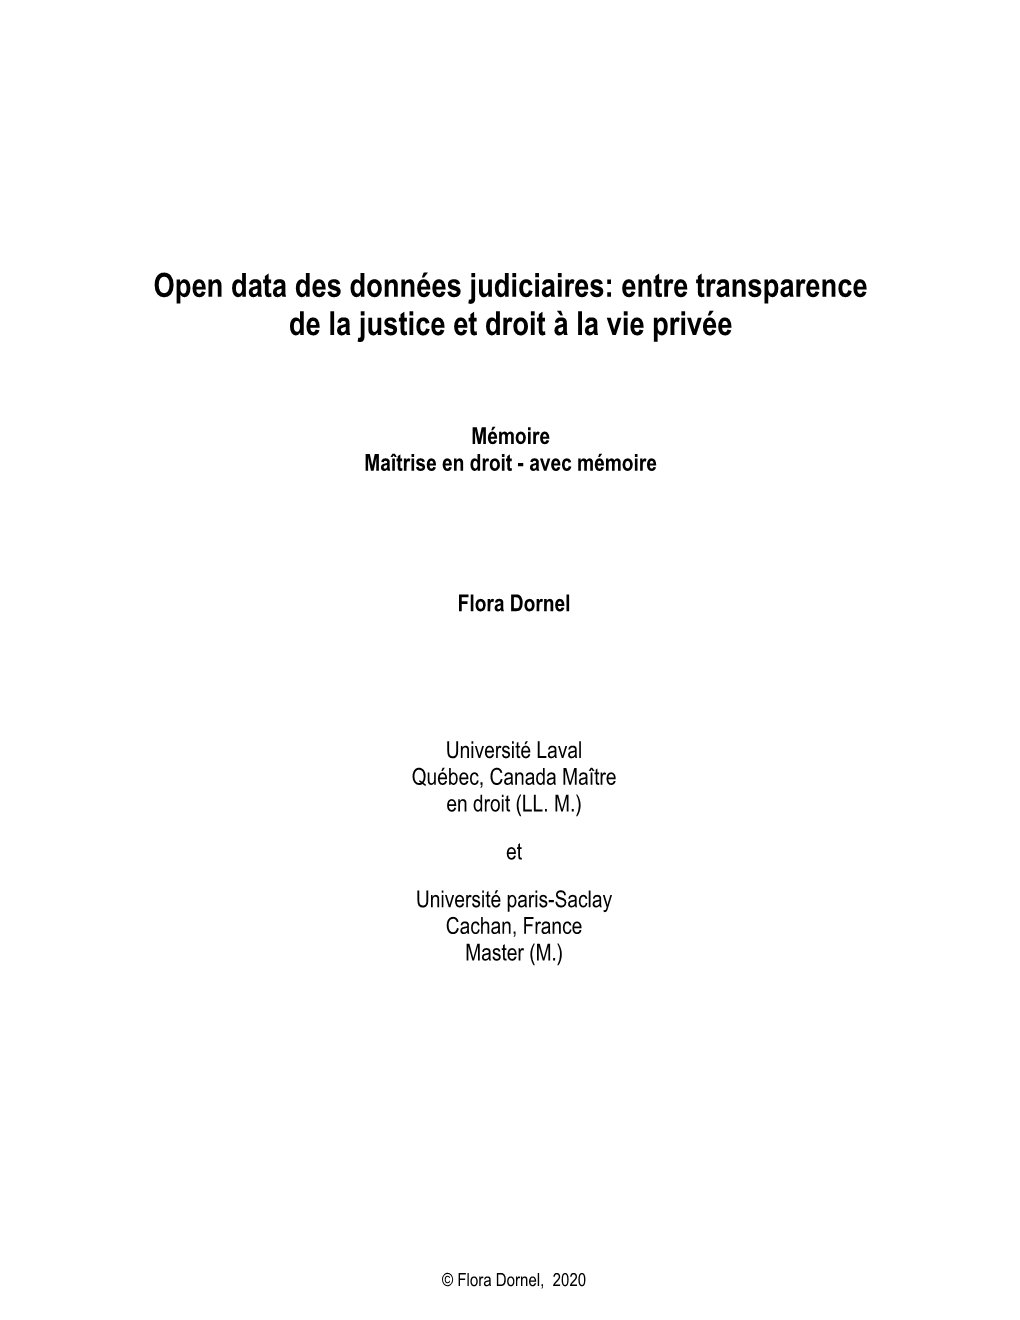 Open Data Des Données Judiciaires: Entre Transparence De La Justice Et Droit À La Vie Privée